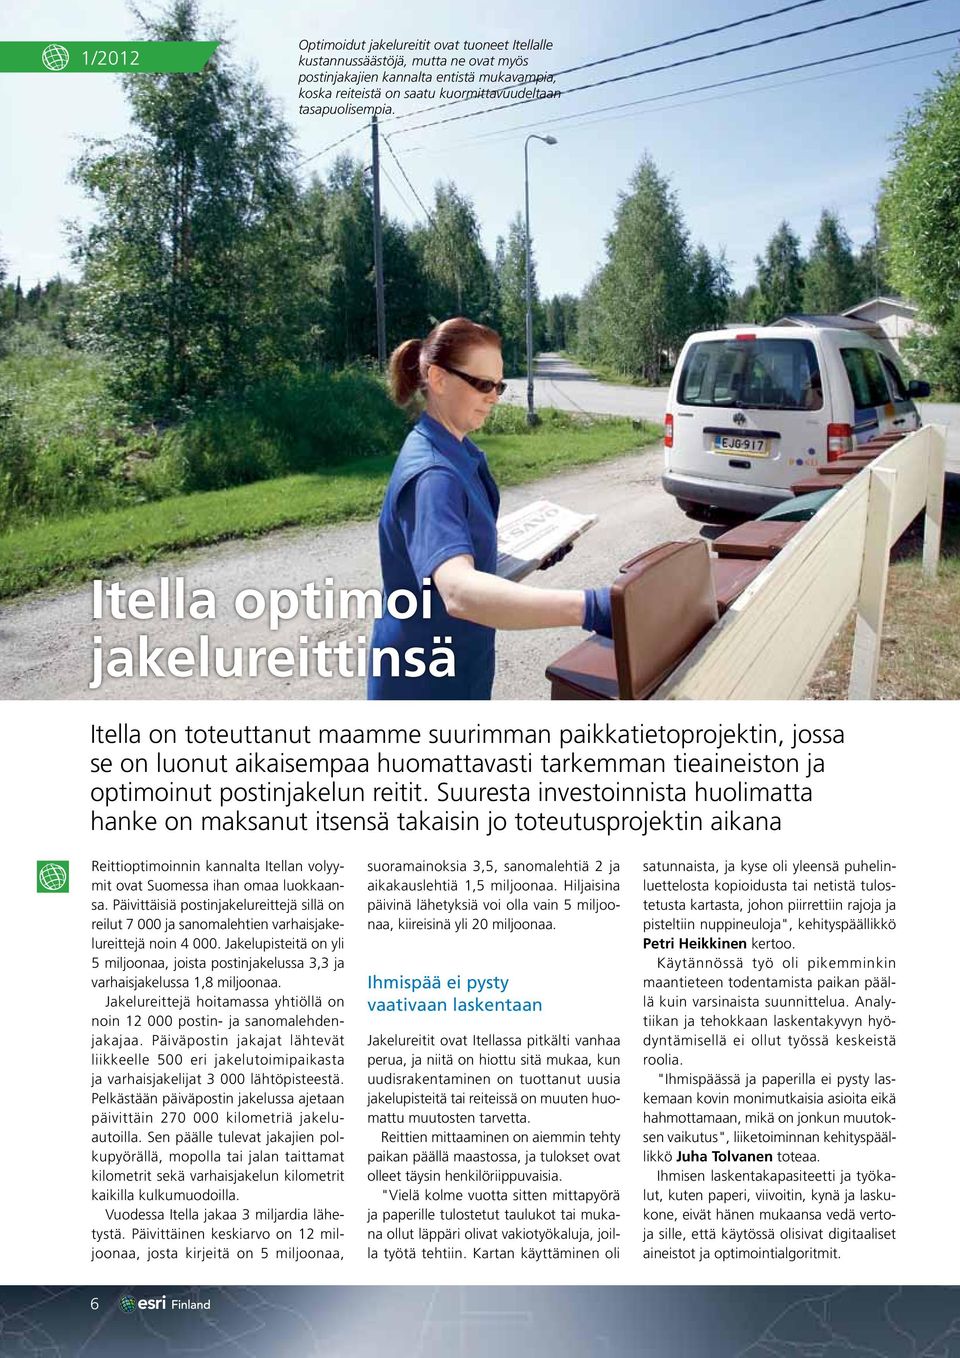 Suuresta investoinnista huolimatta hanke on maksanut itsensä takaisin jo toteutusprojektin aikana Reittioptimoinnin kannalta Itellan volyymit ovat Suomessa ihan omaa luokkaansa.